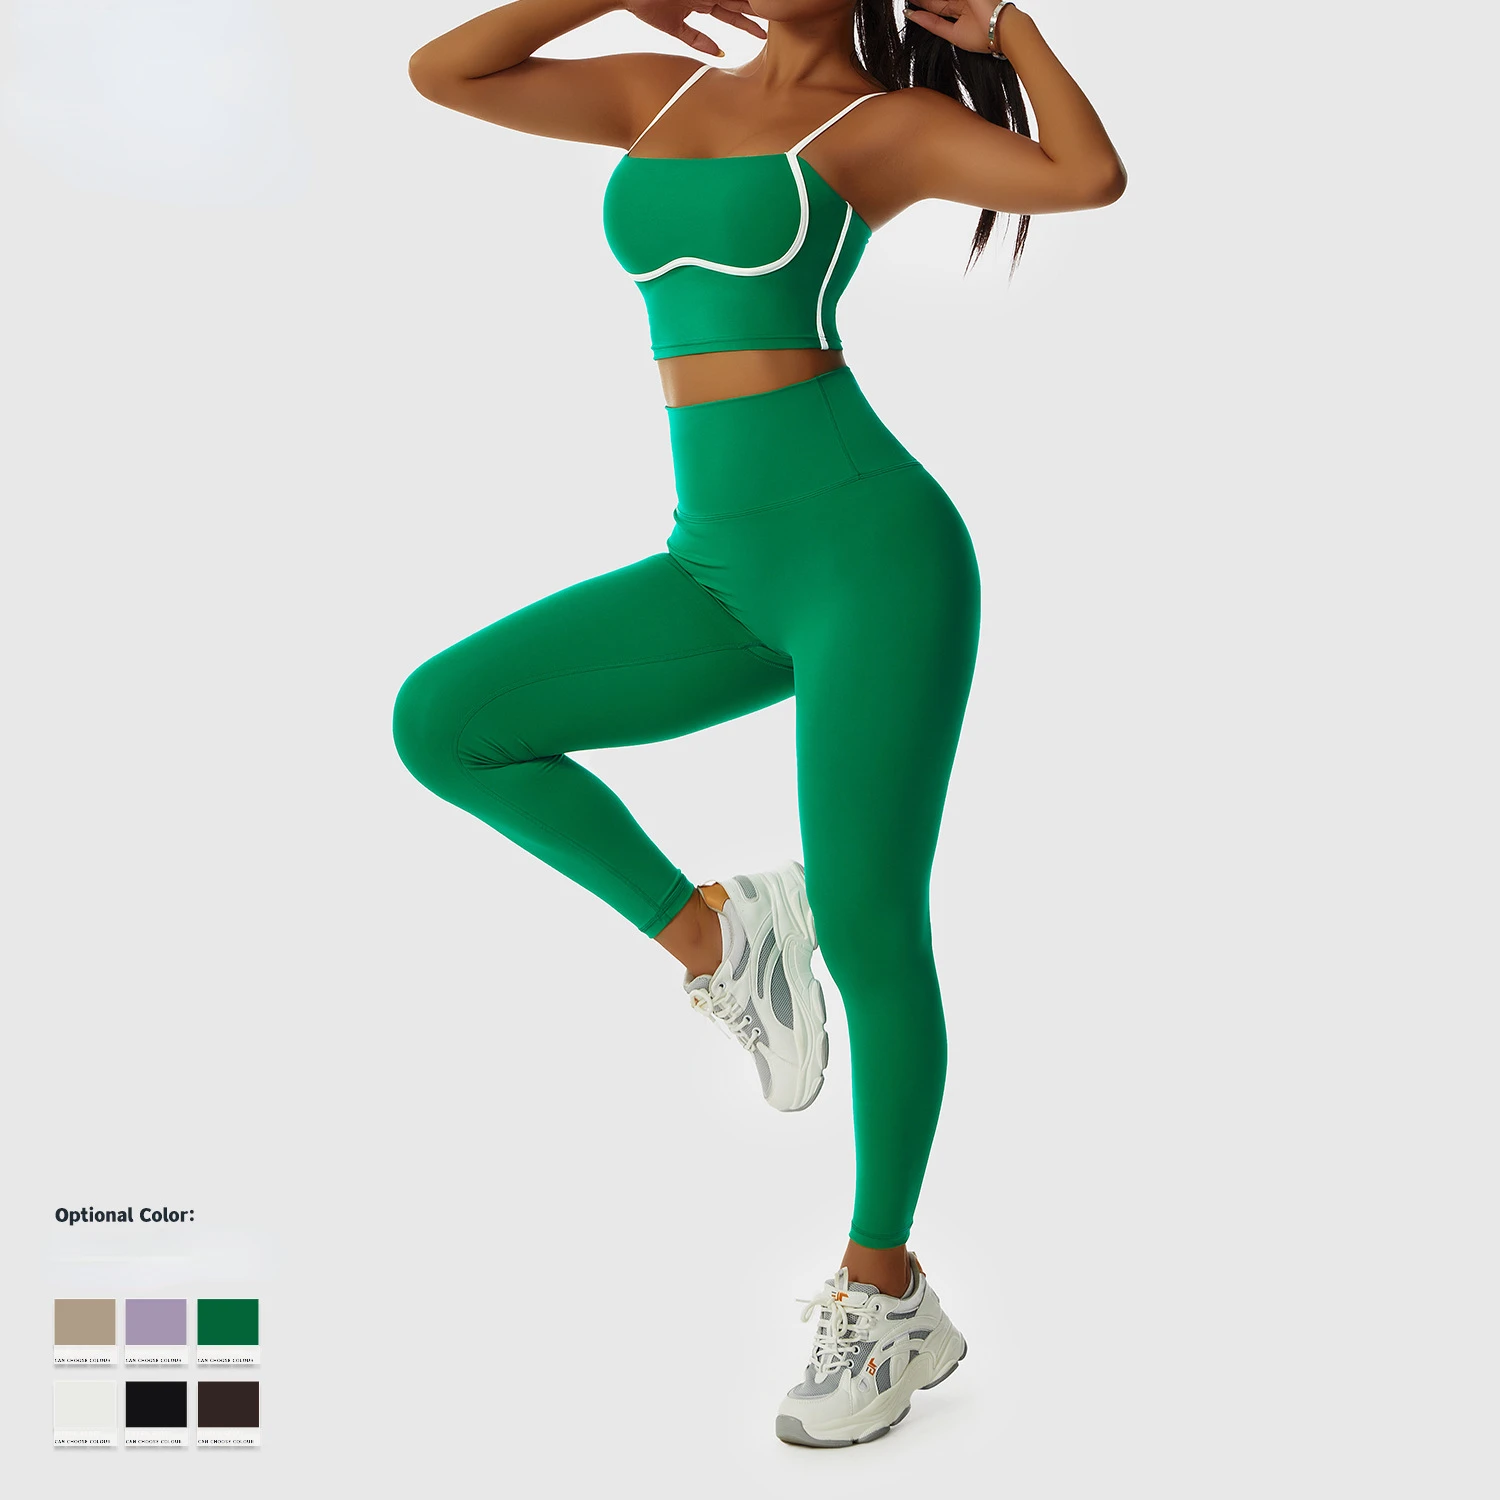 Kadınlar için spor Sutyen Seti Spor Dikişsiz bralette Yüksek Darbe Spor Sutyeni Yoga Spor Setleri Kadın İç Çamaşırı Push-up sütyen Spor Görüntü  5